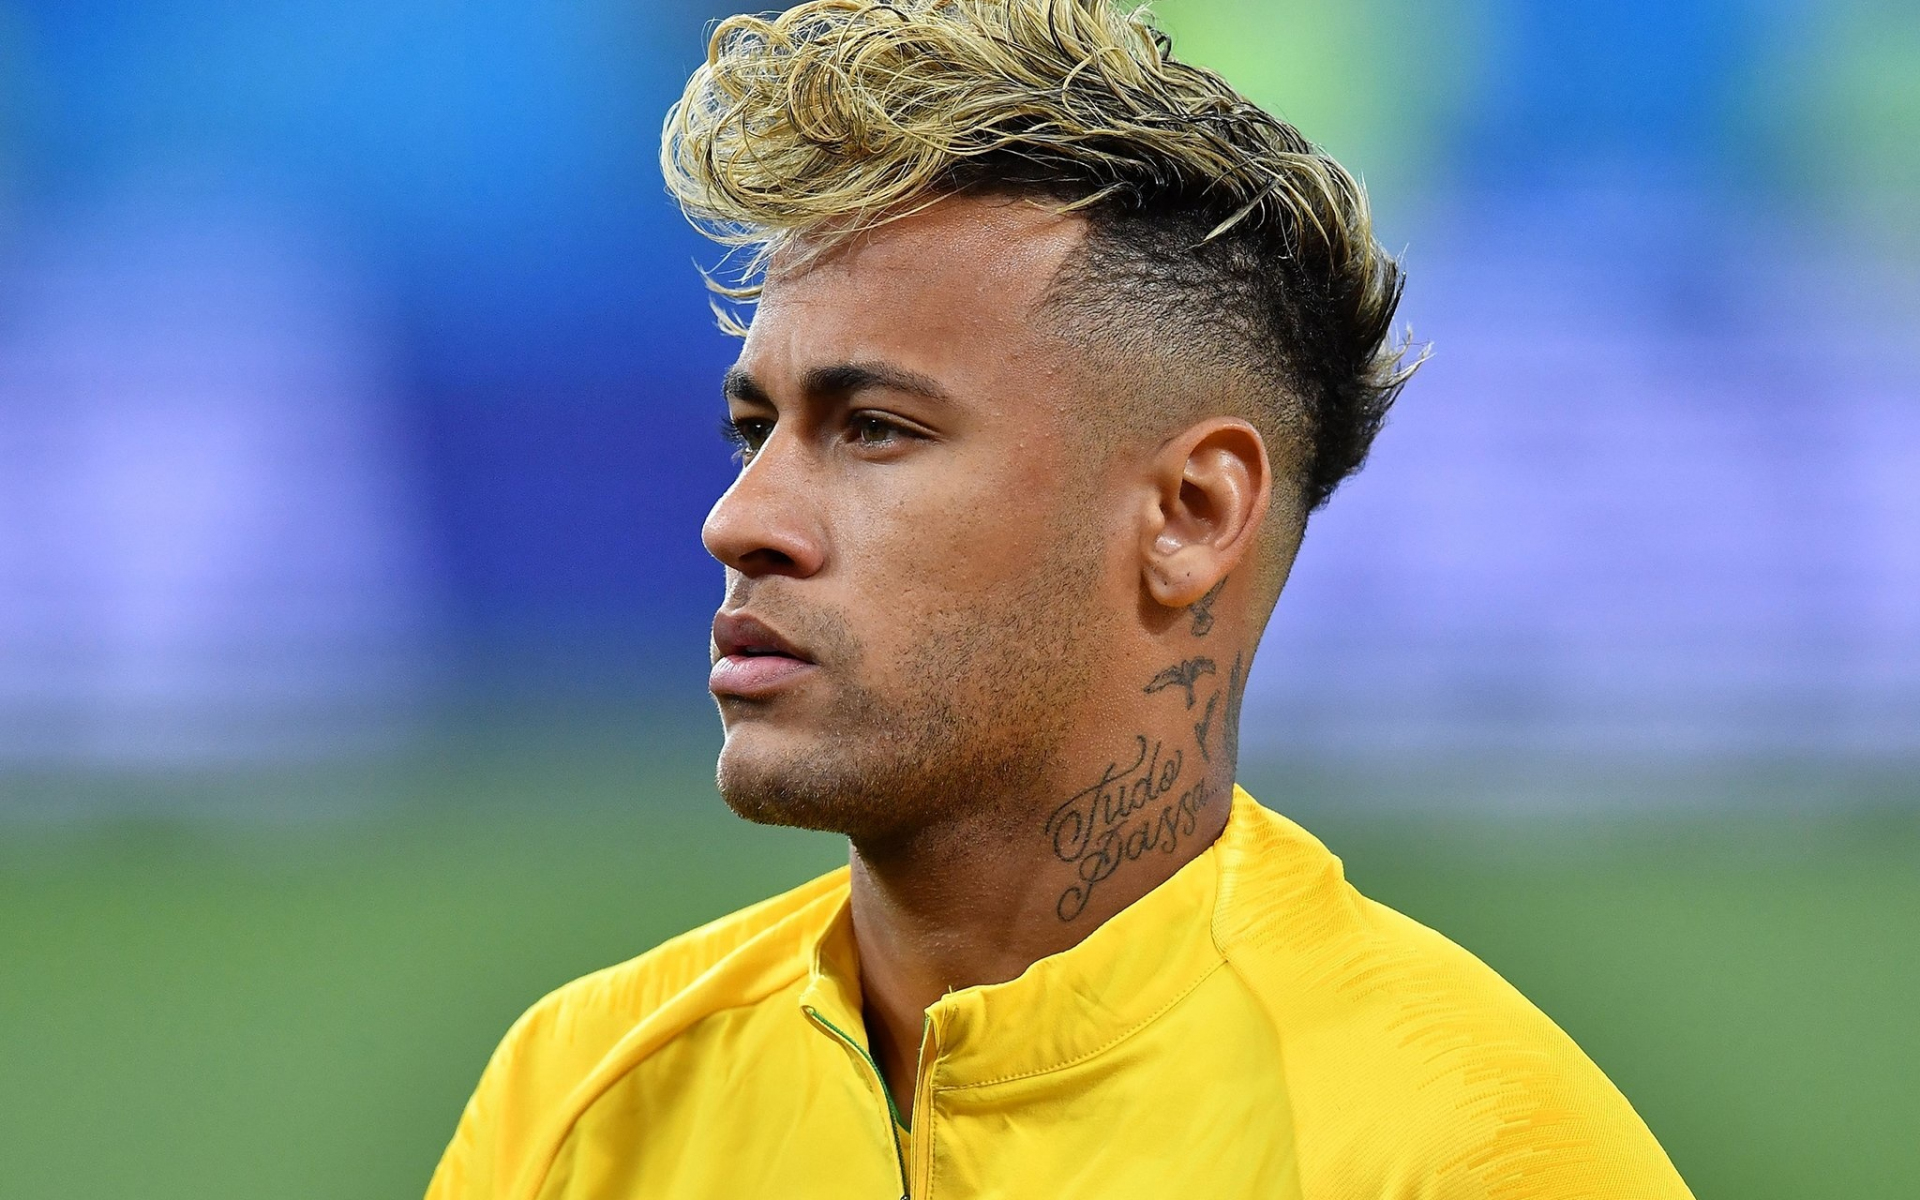 Neymar Number 10 Wallpaper